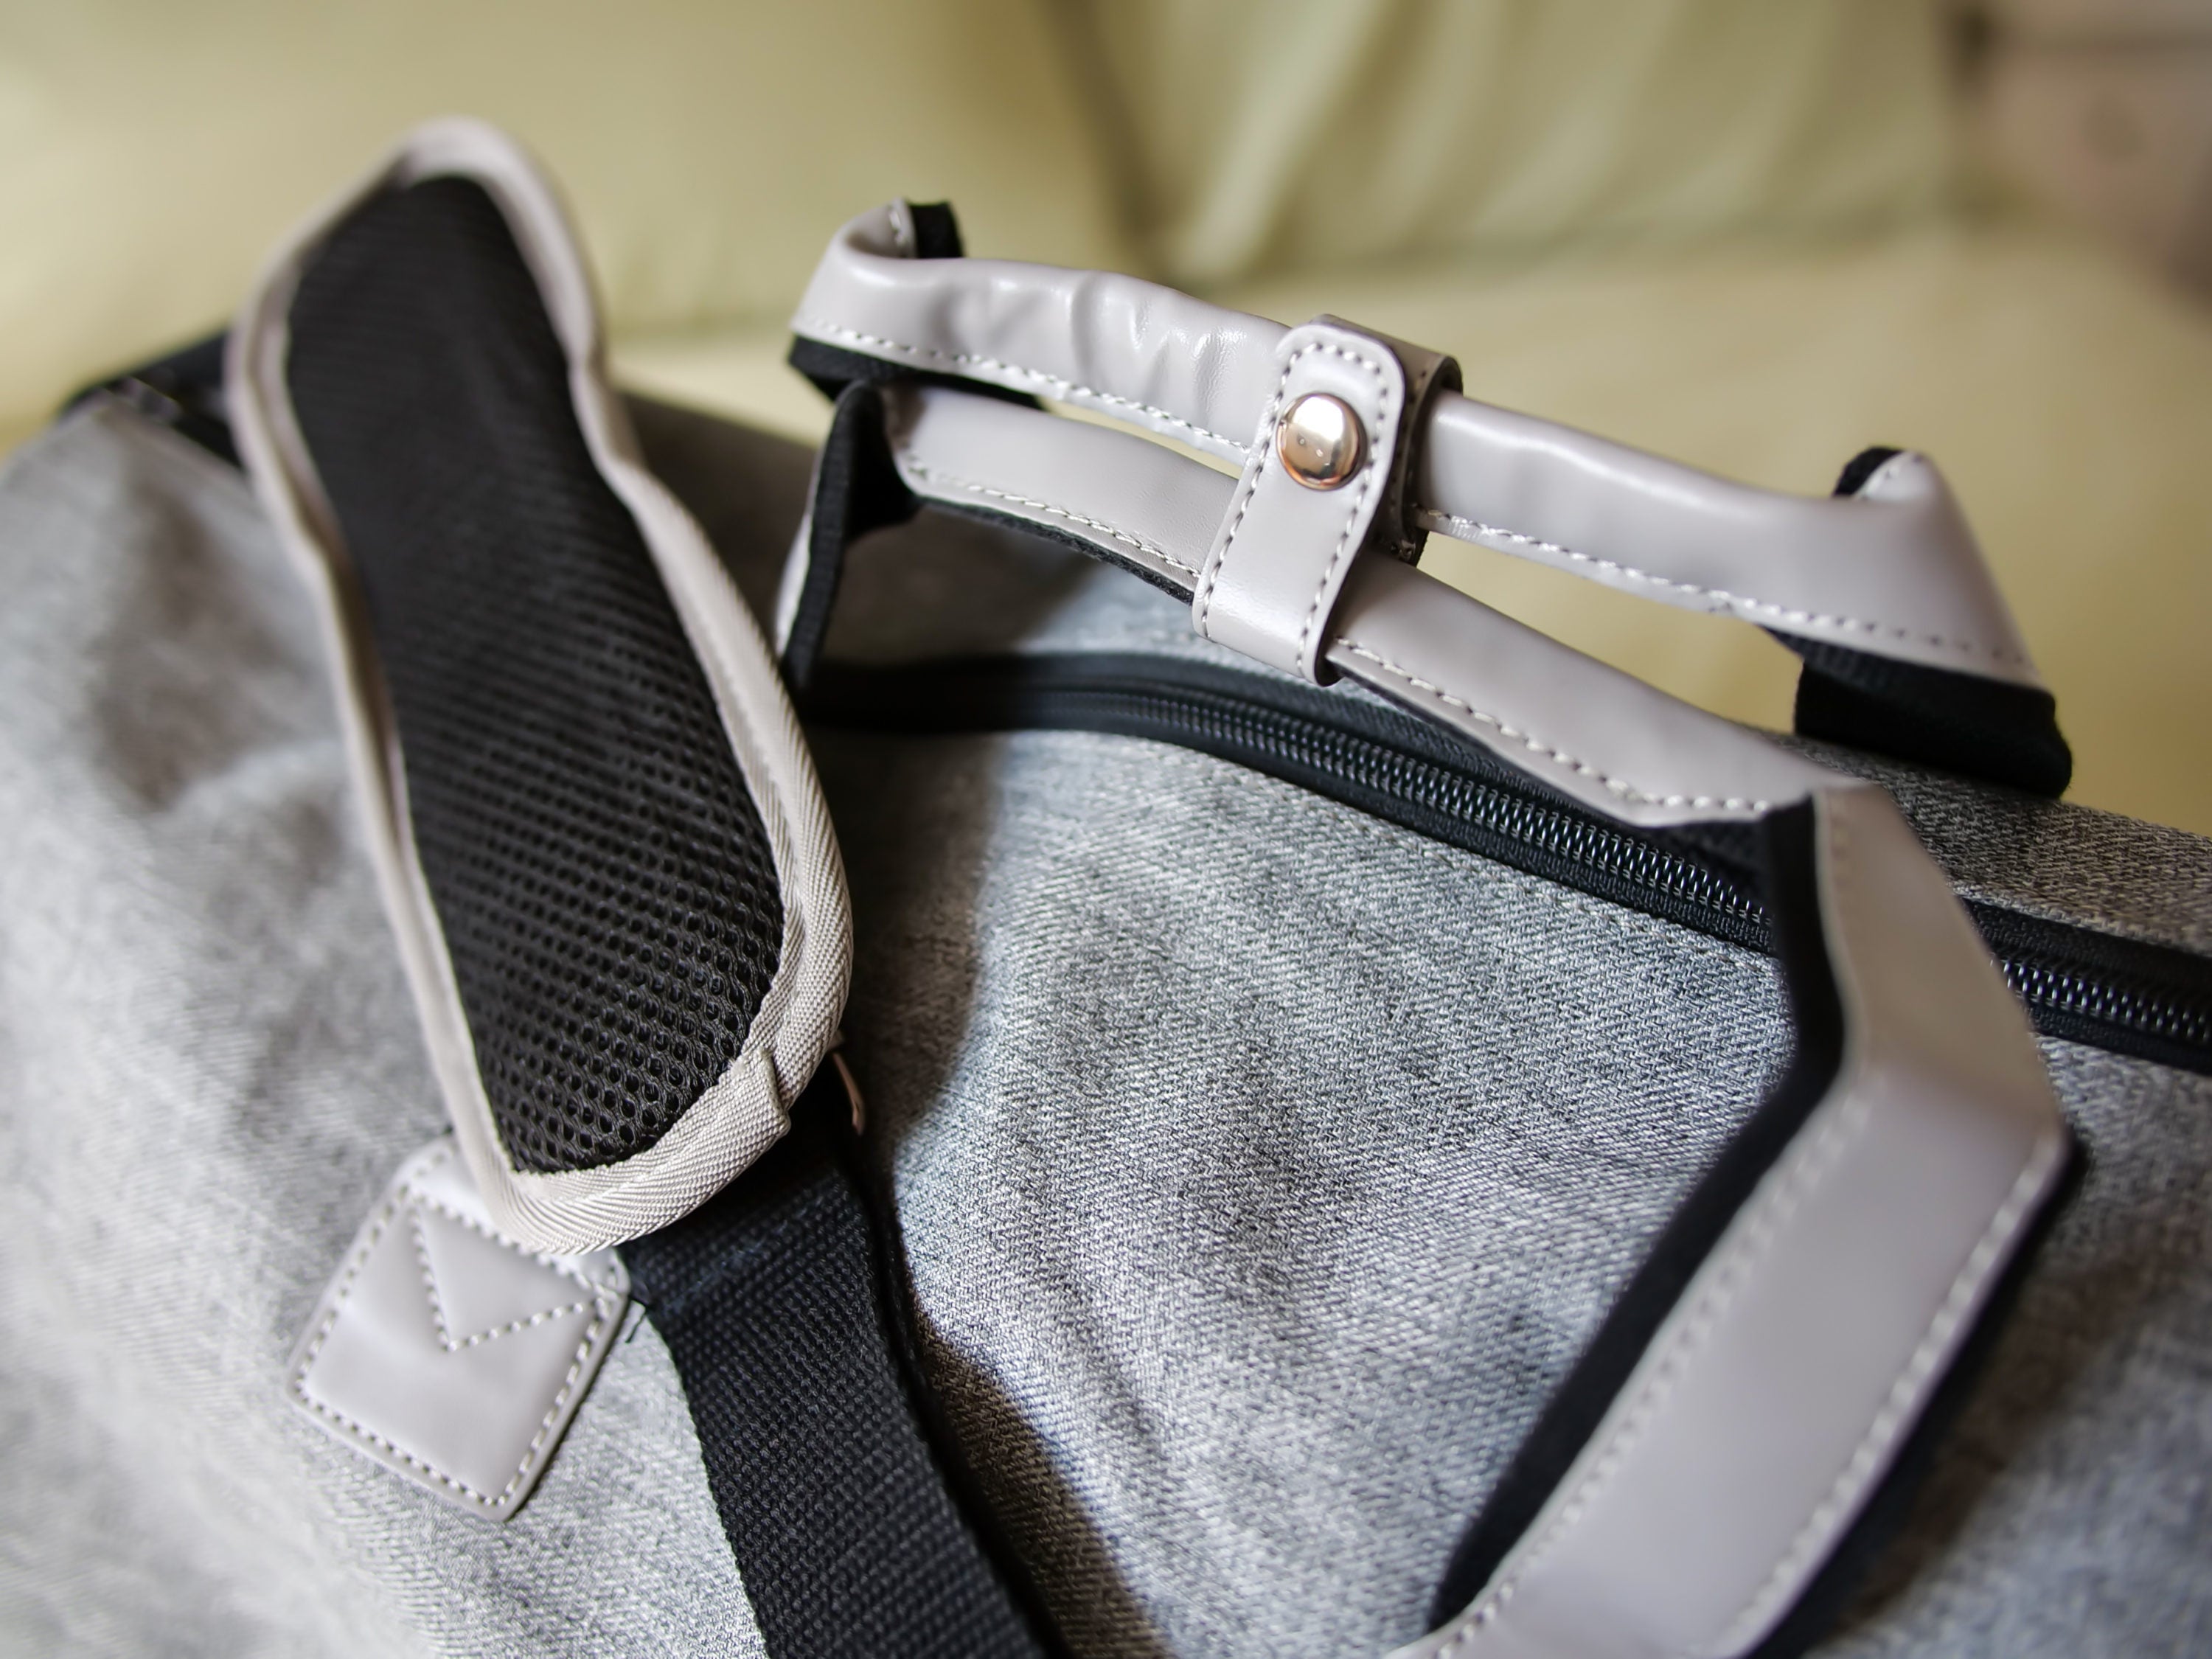 Modoker Garment Bags for Travel - Modoker